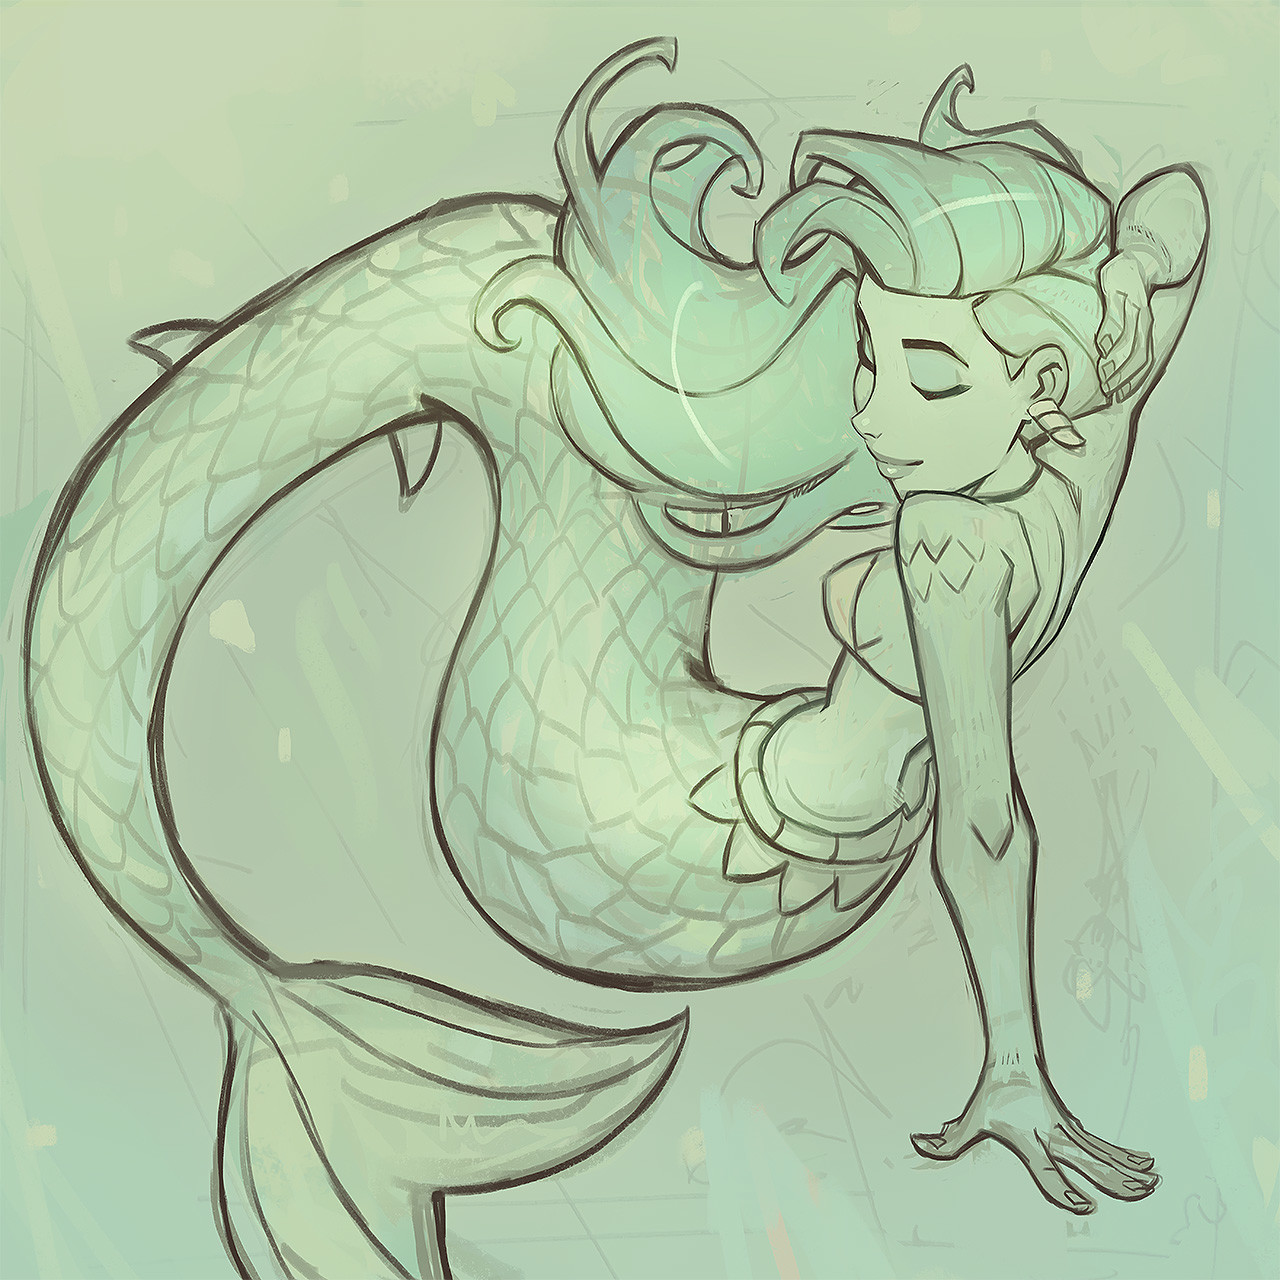 mermaid sketch by juniebb on DeviantArt